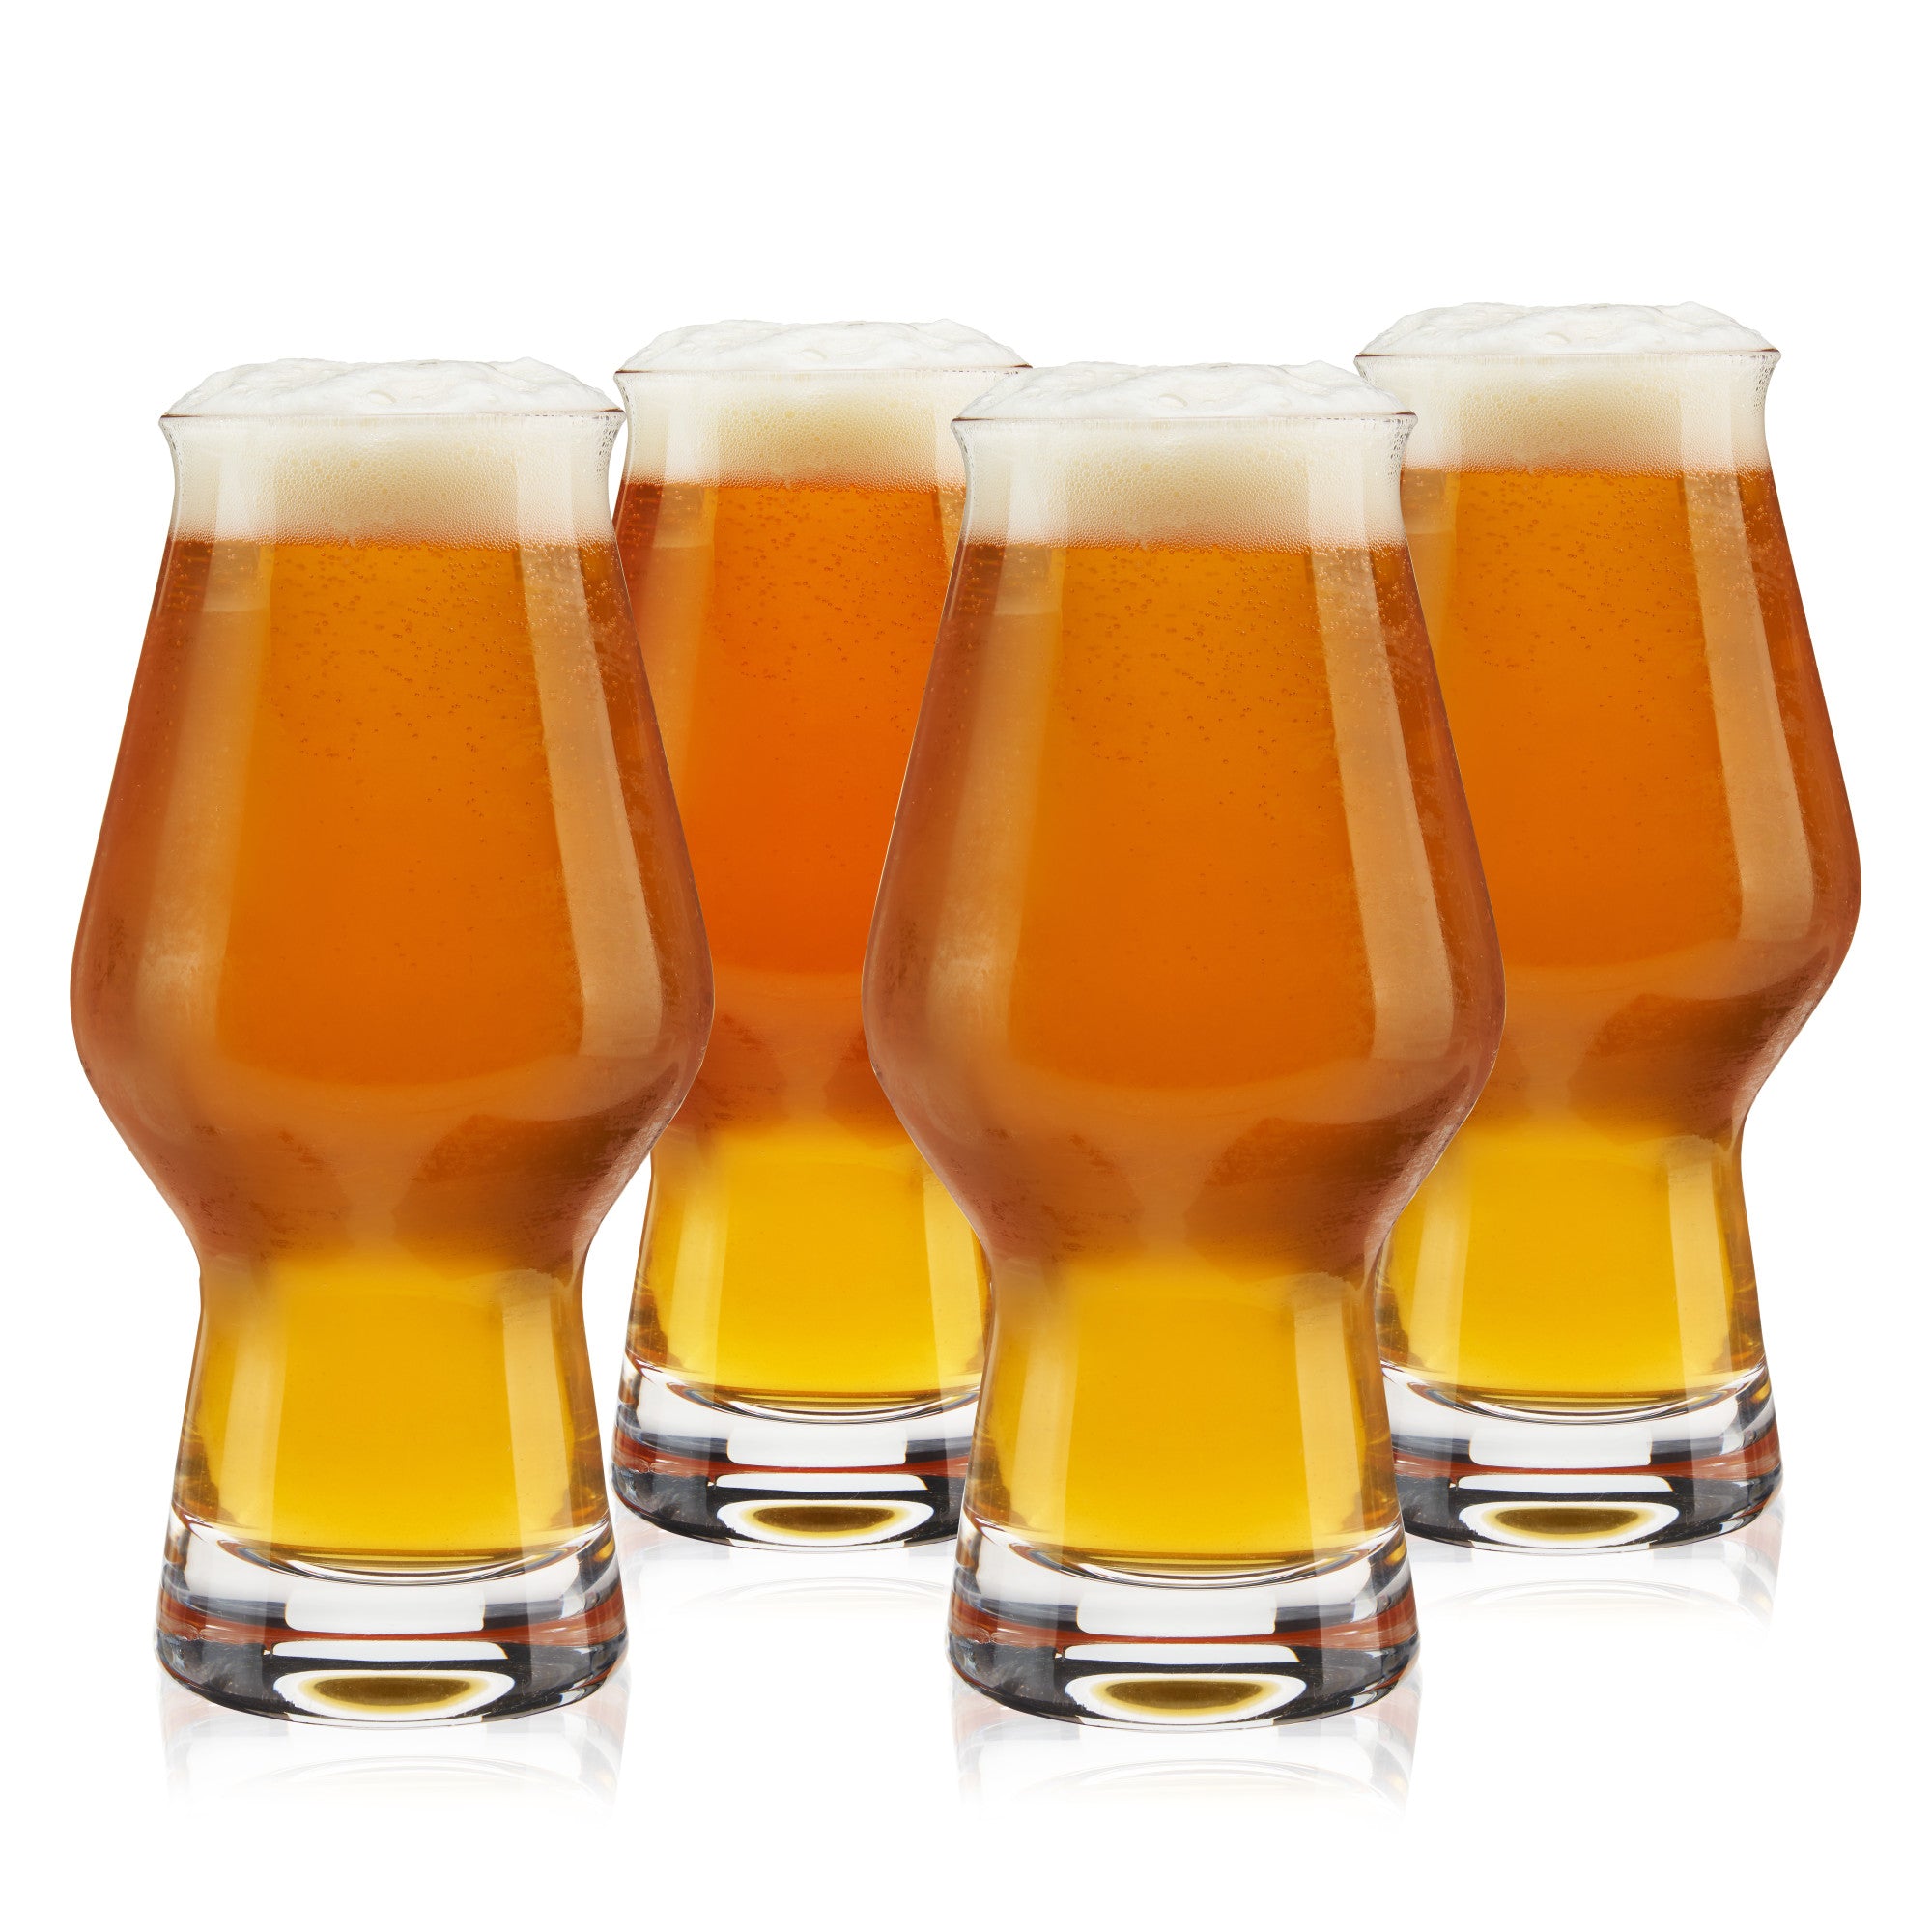 IPA Beer Glasses, Set of 4 by True (9955)